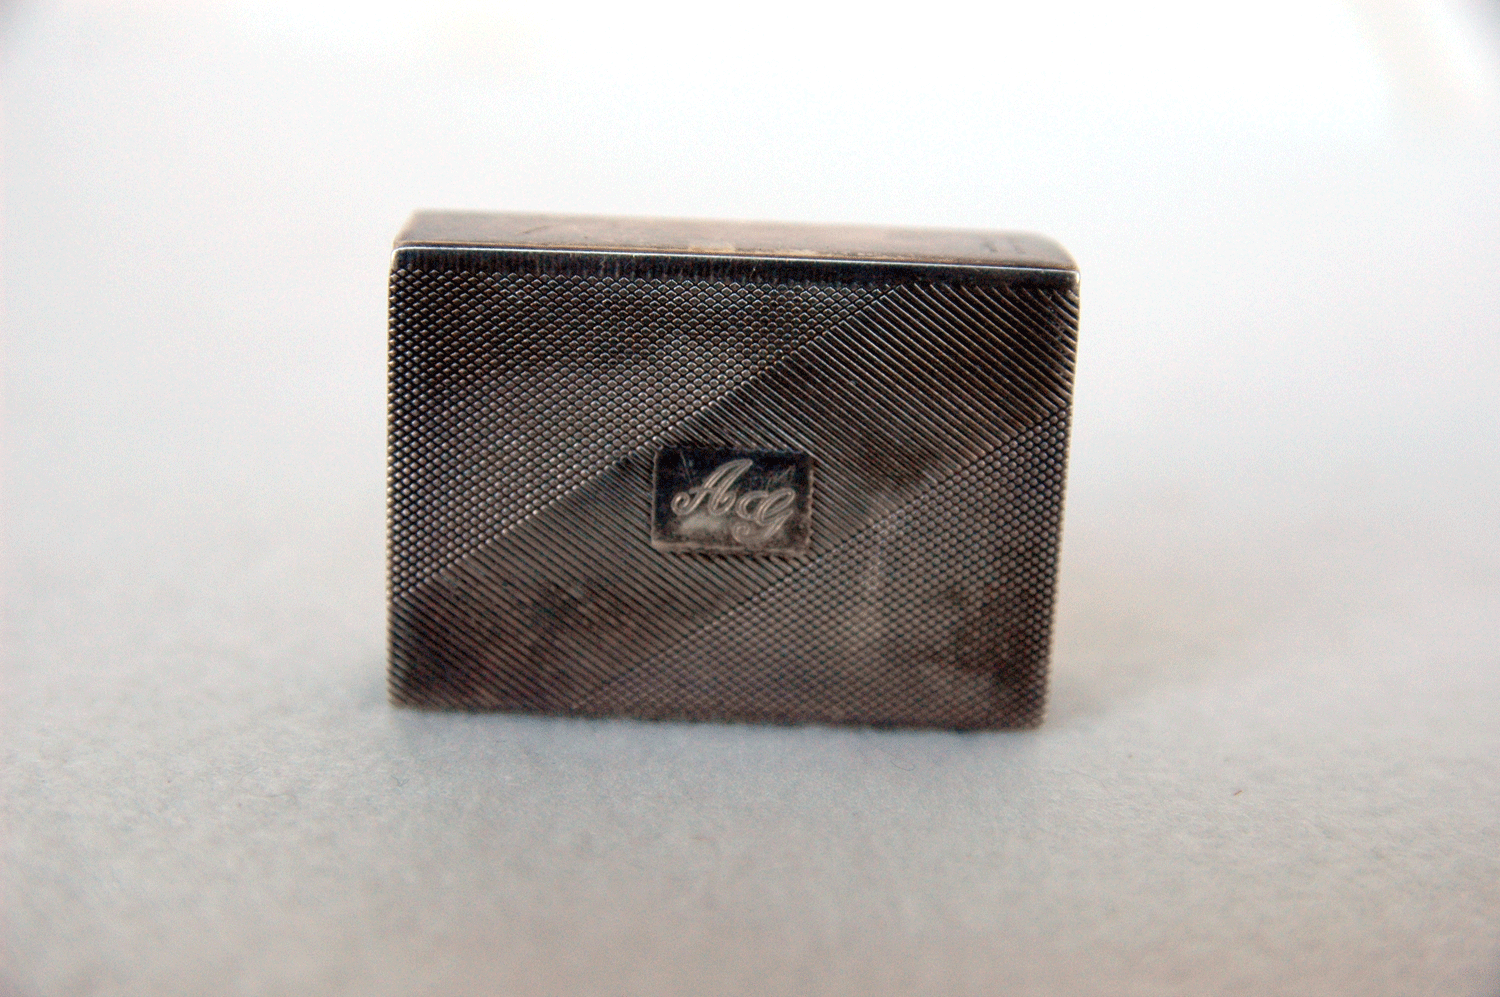 Streichholzschachtelhalter, 800/- Silber, Monogramm AG, Greggio (Rino Greggio, Italien) - Bild 3 aus 4